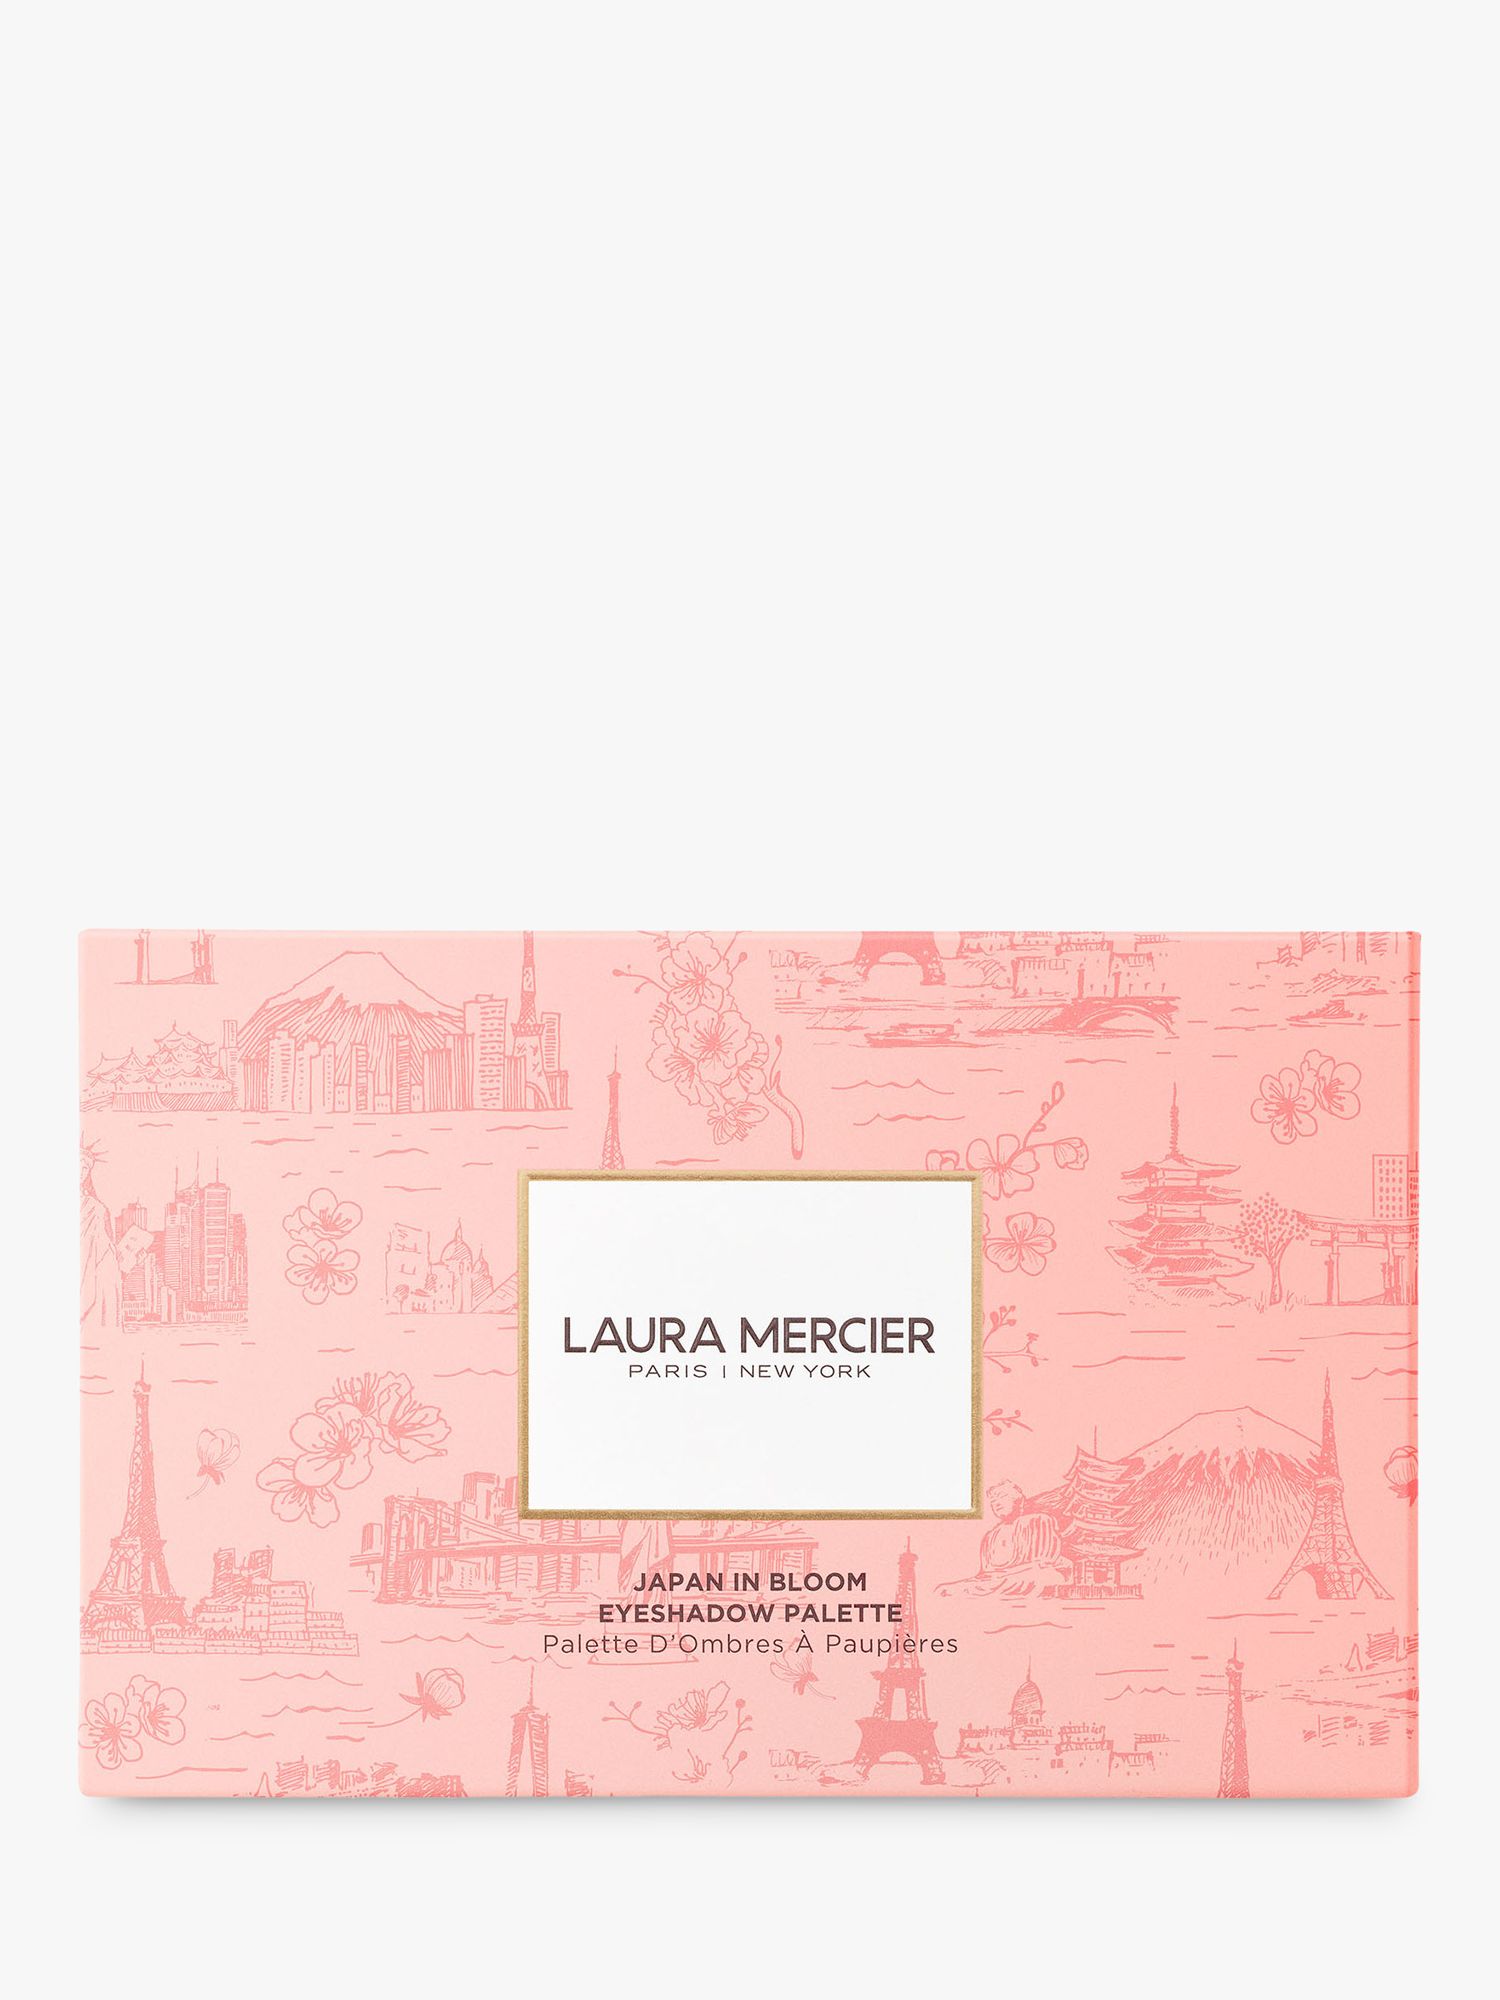 Laura Mercier Limited Edition Eyeshadow Palette, Japan In Bloom